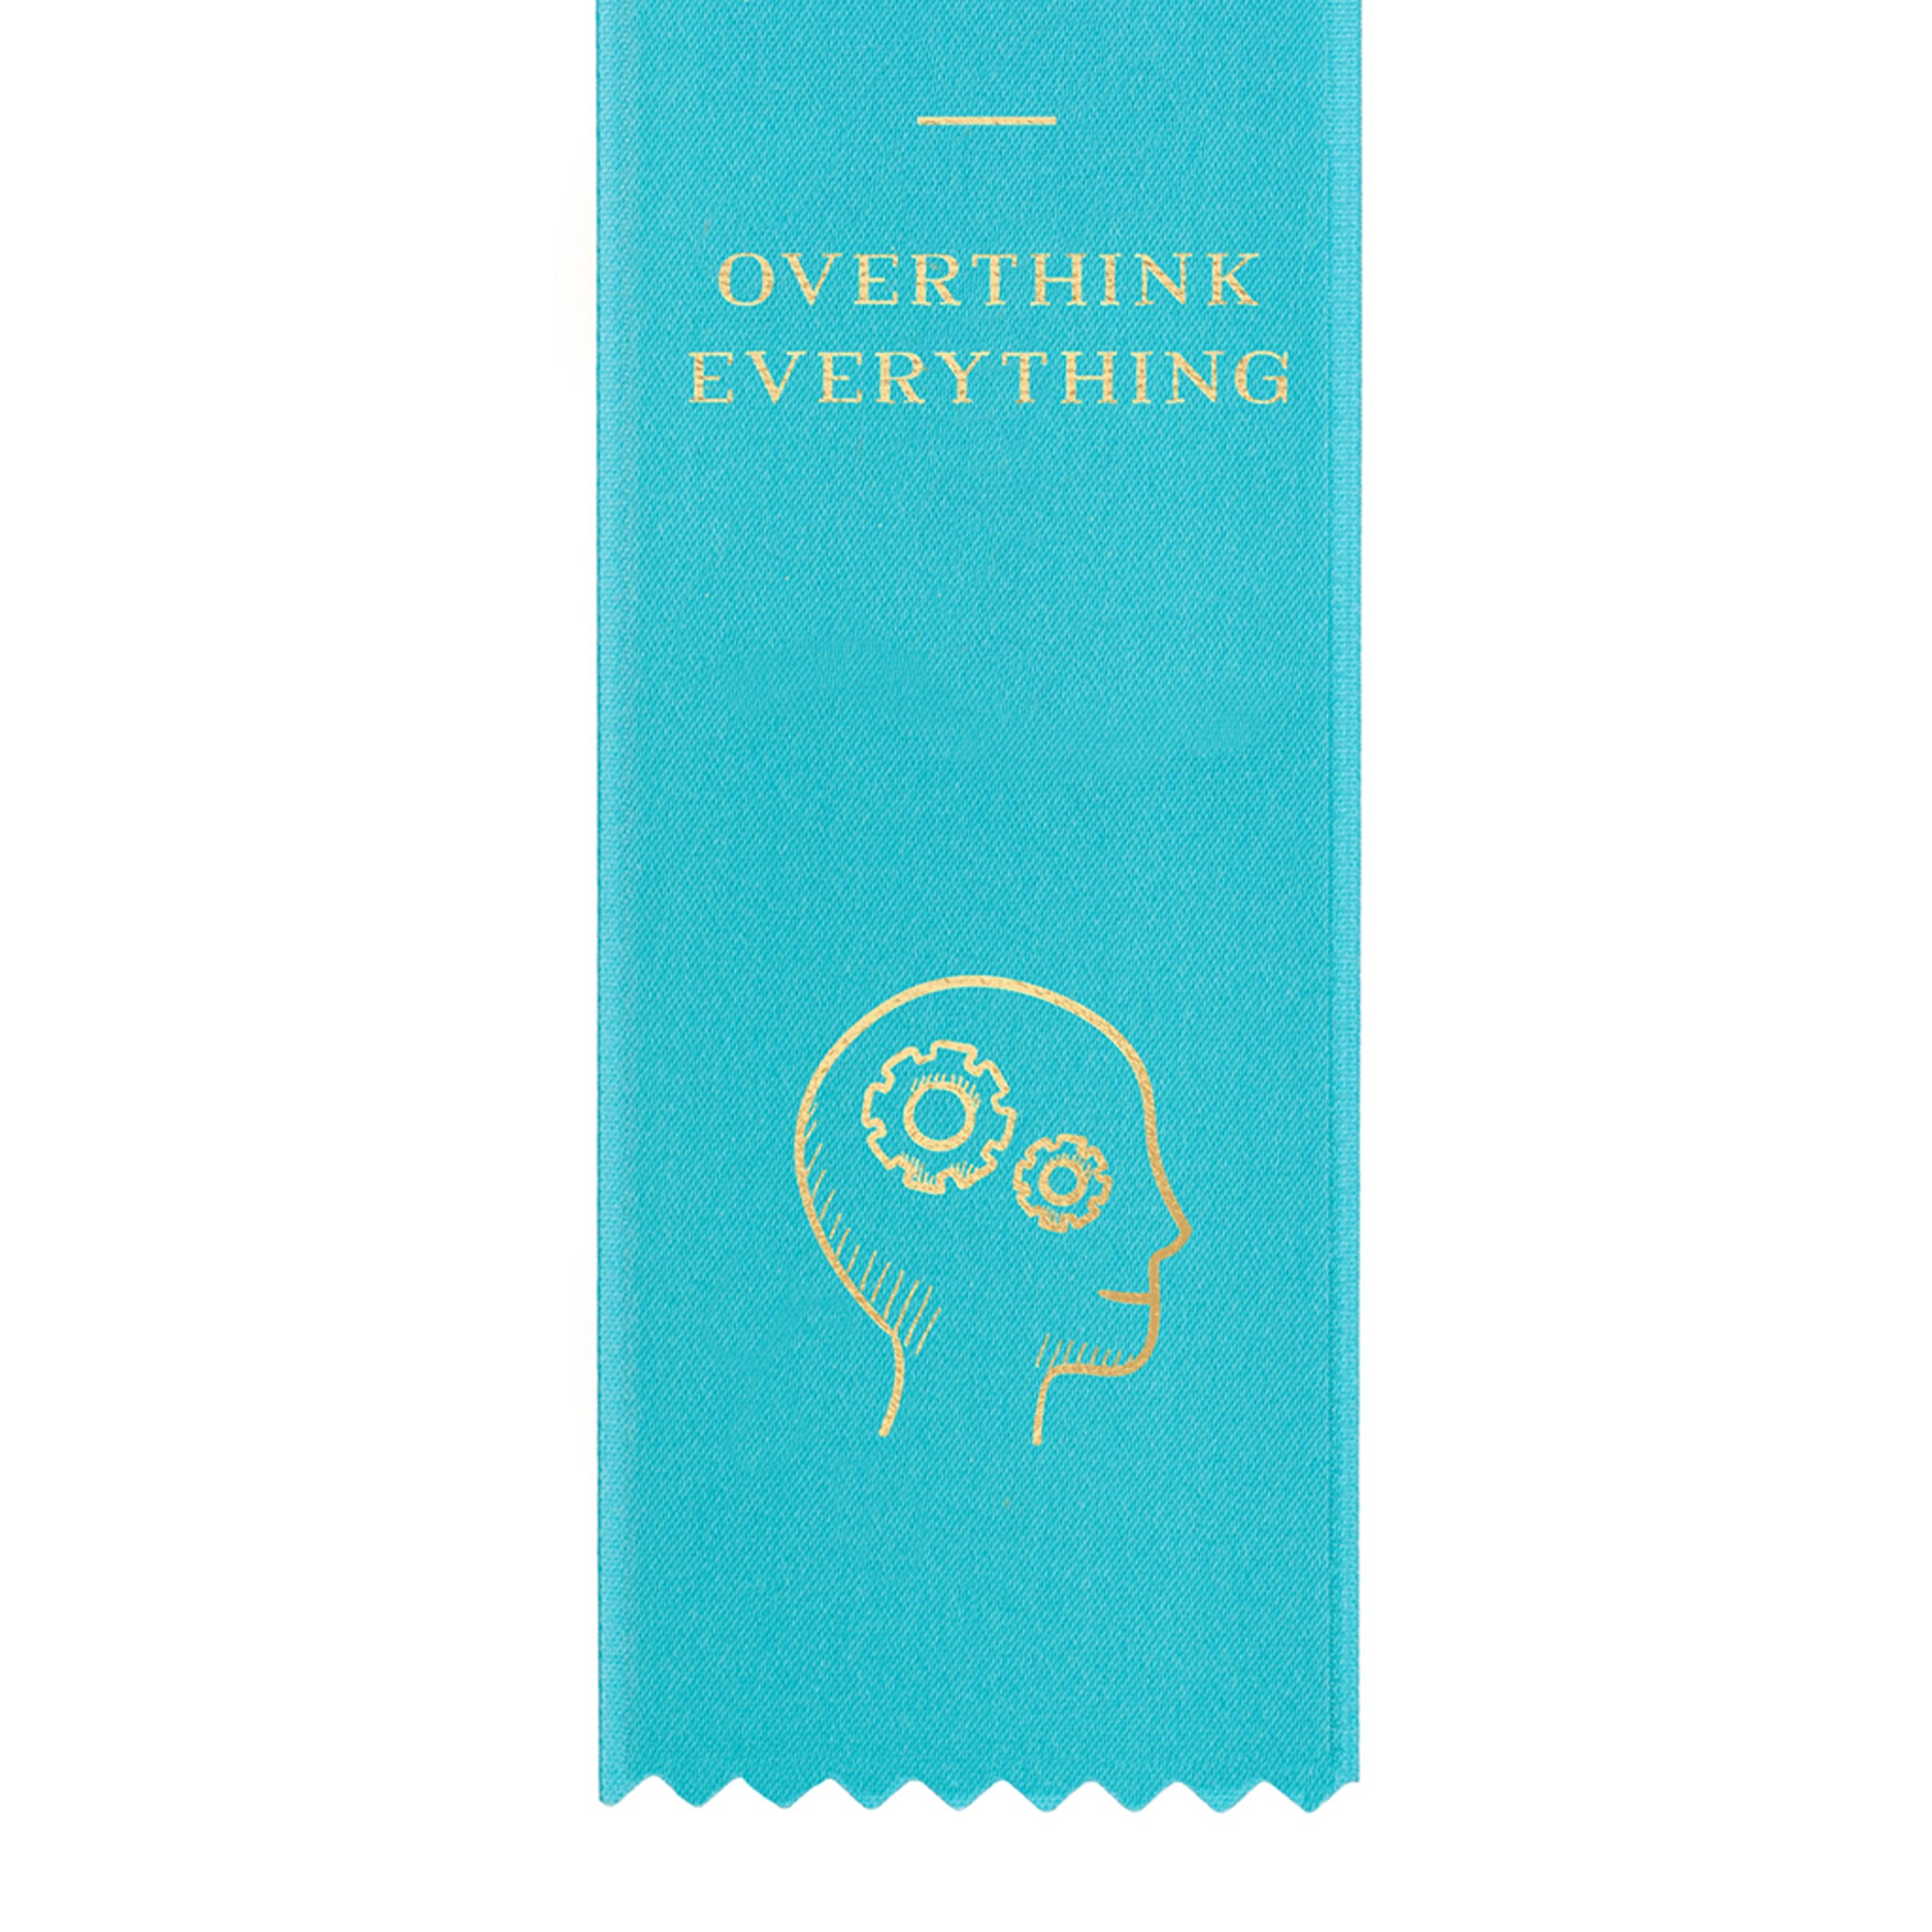 Overthink Everything Award Ribbon